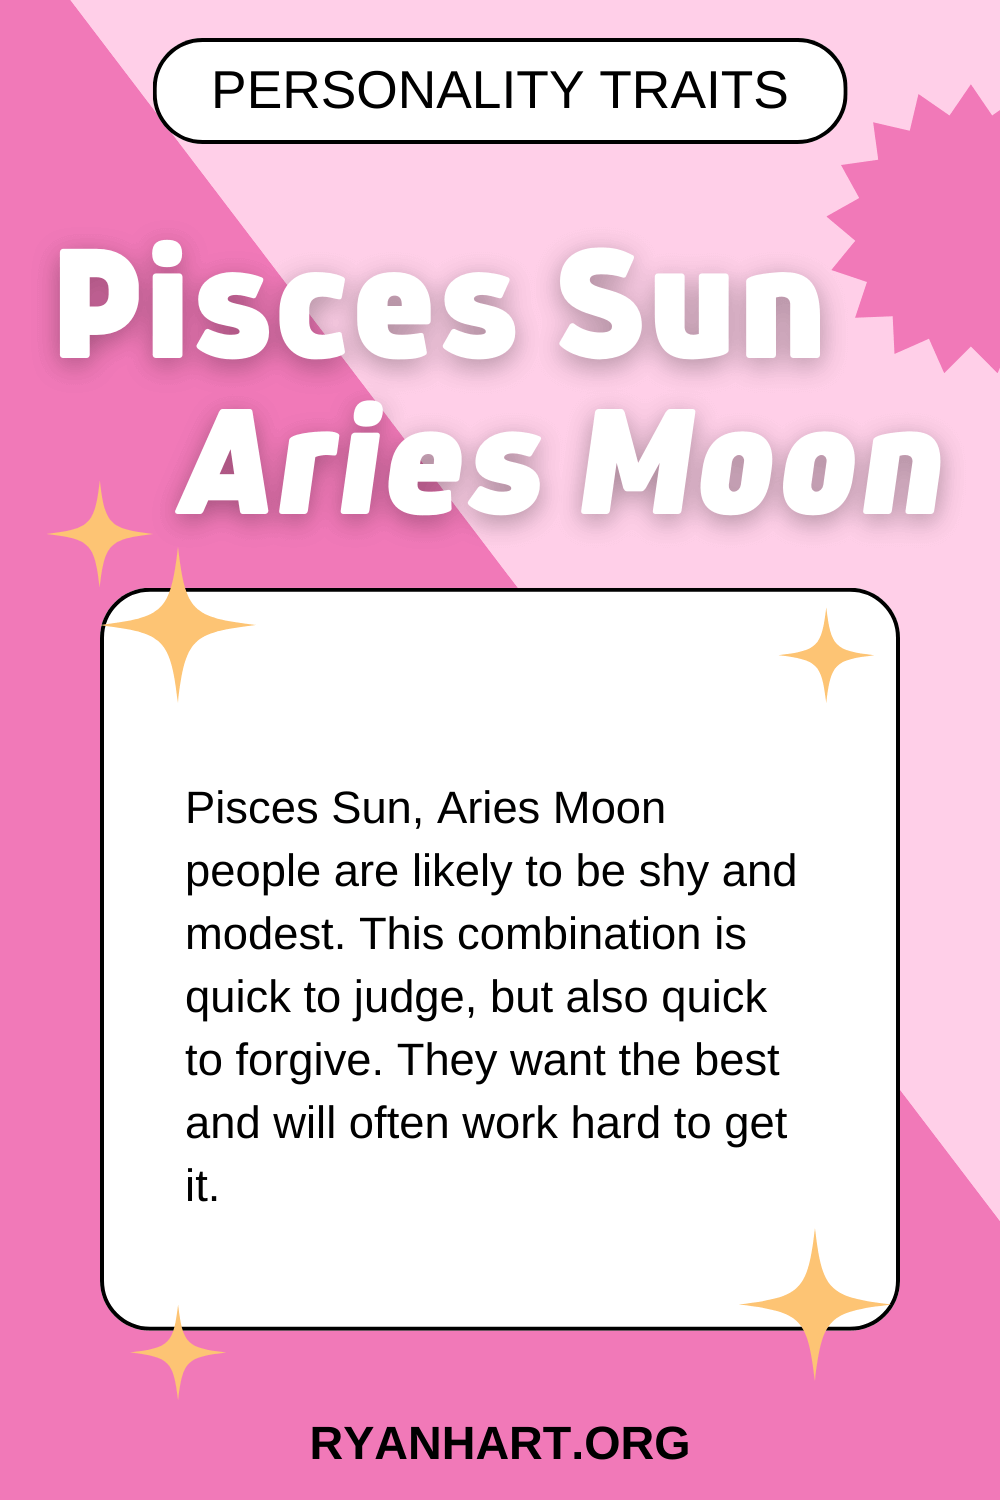 Pisces Sun Aries Moon Description